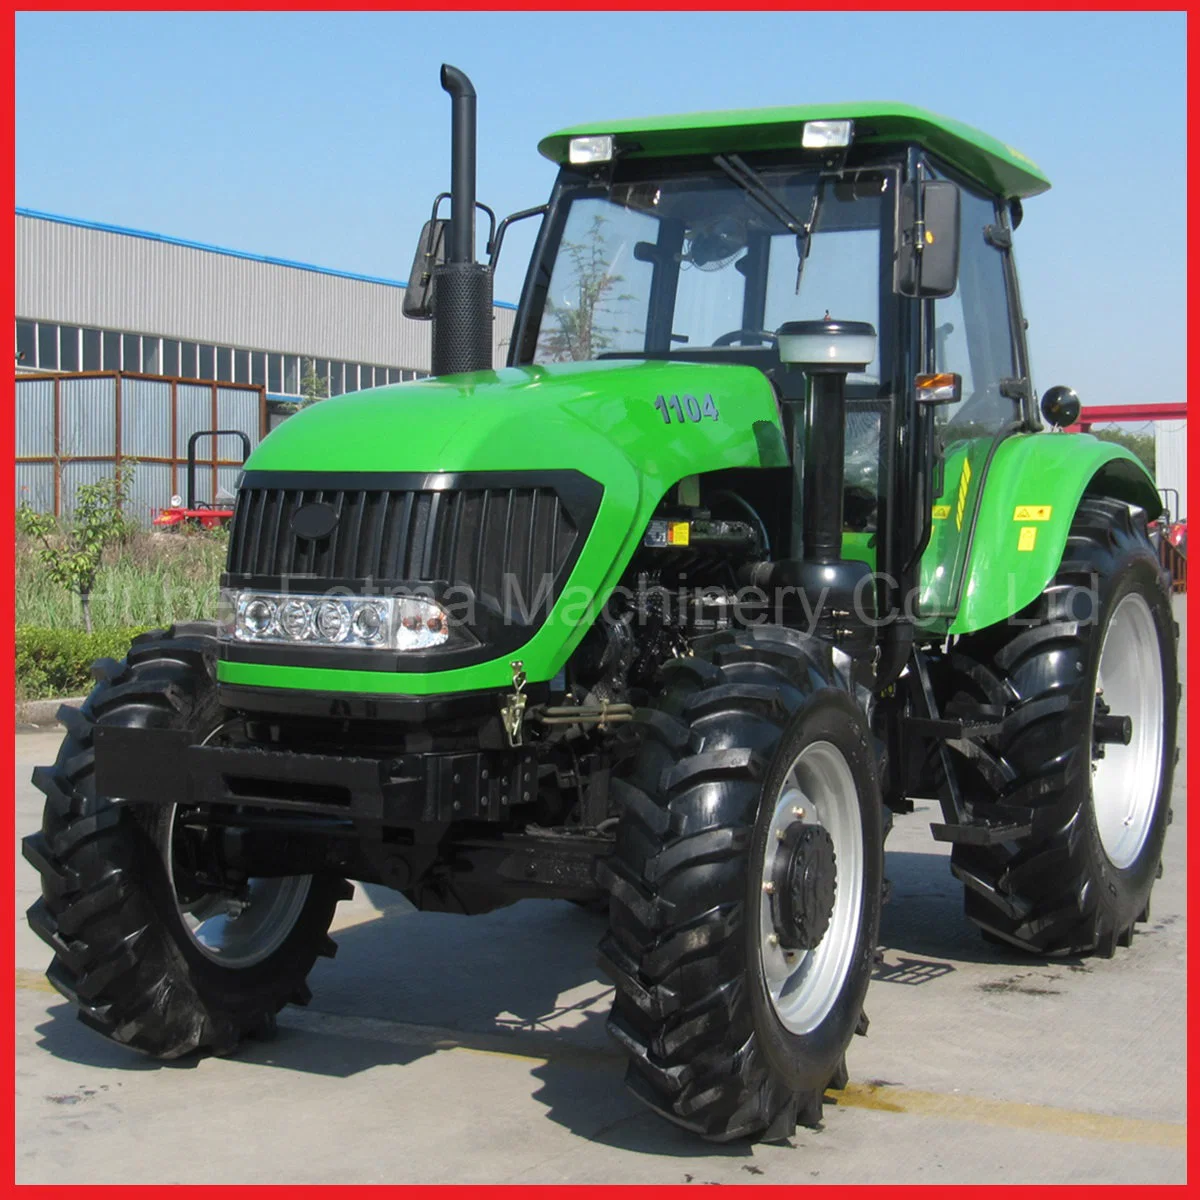 Tracteurs agricoles/ Moissonneuses-batteuses/ Équipement agricole Outils agricoles et machines agricoles